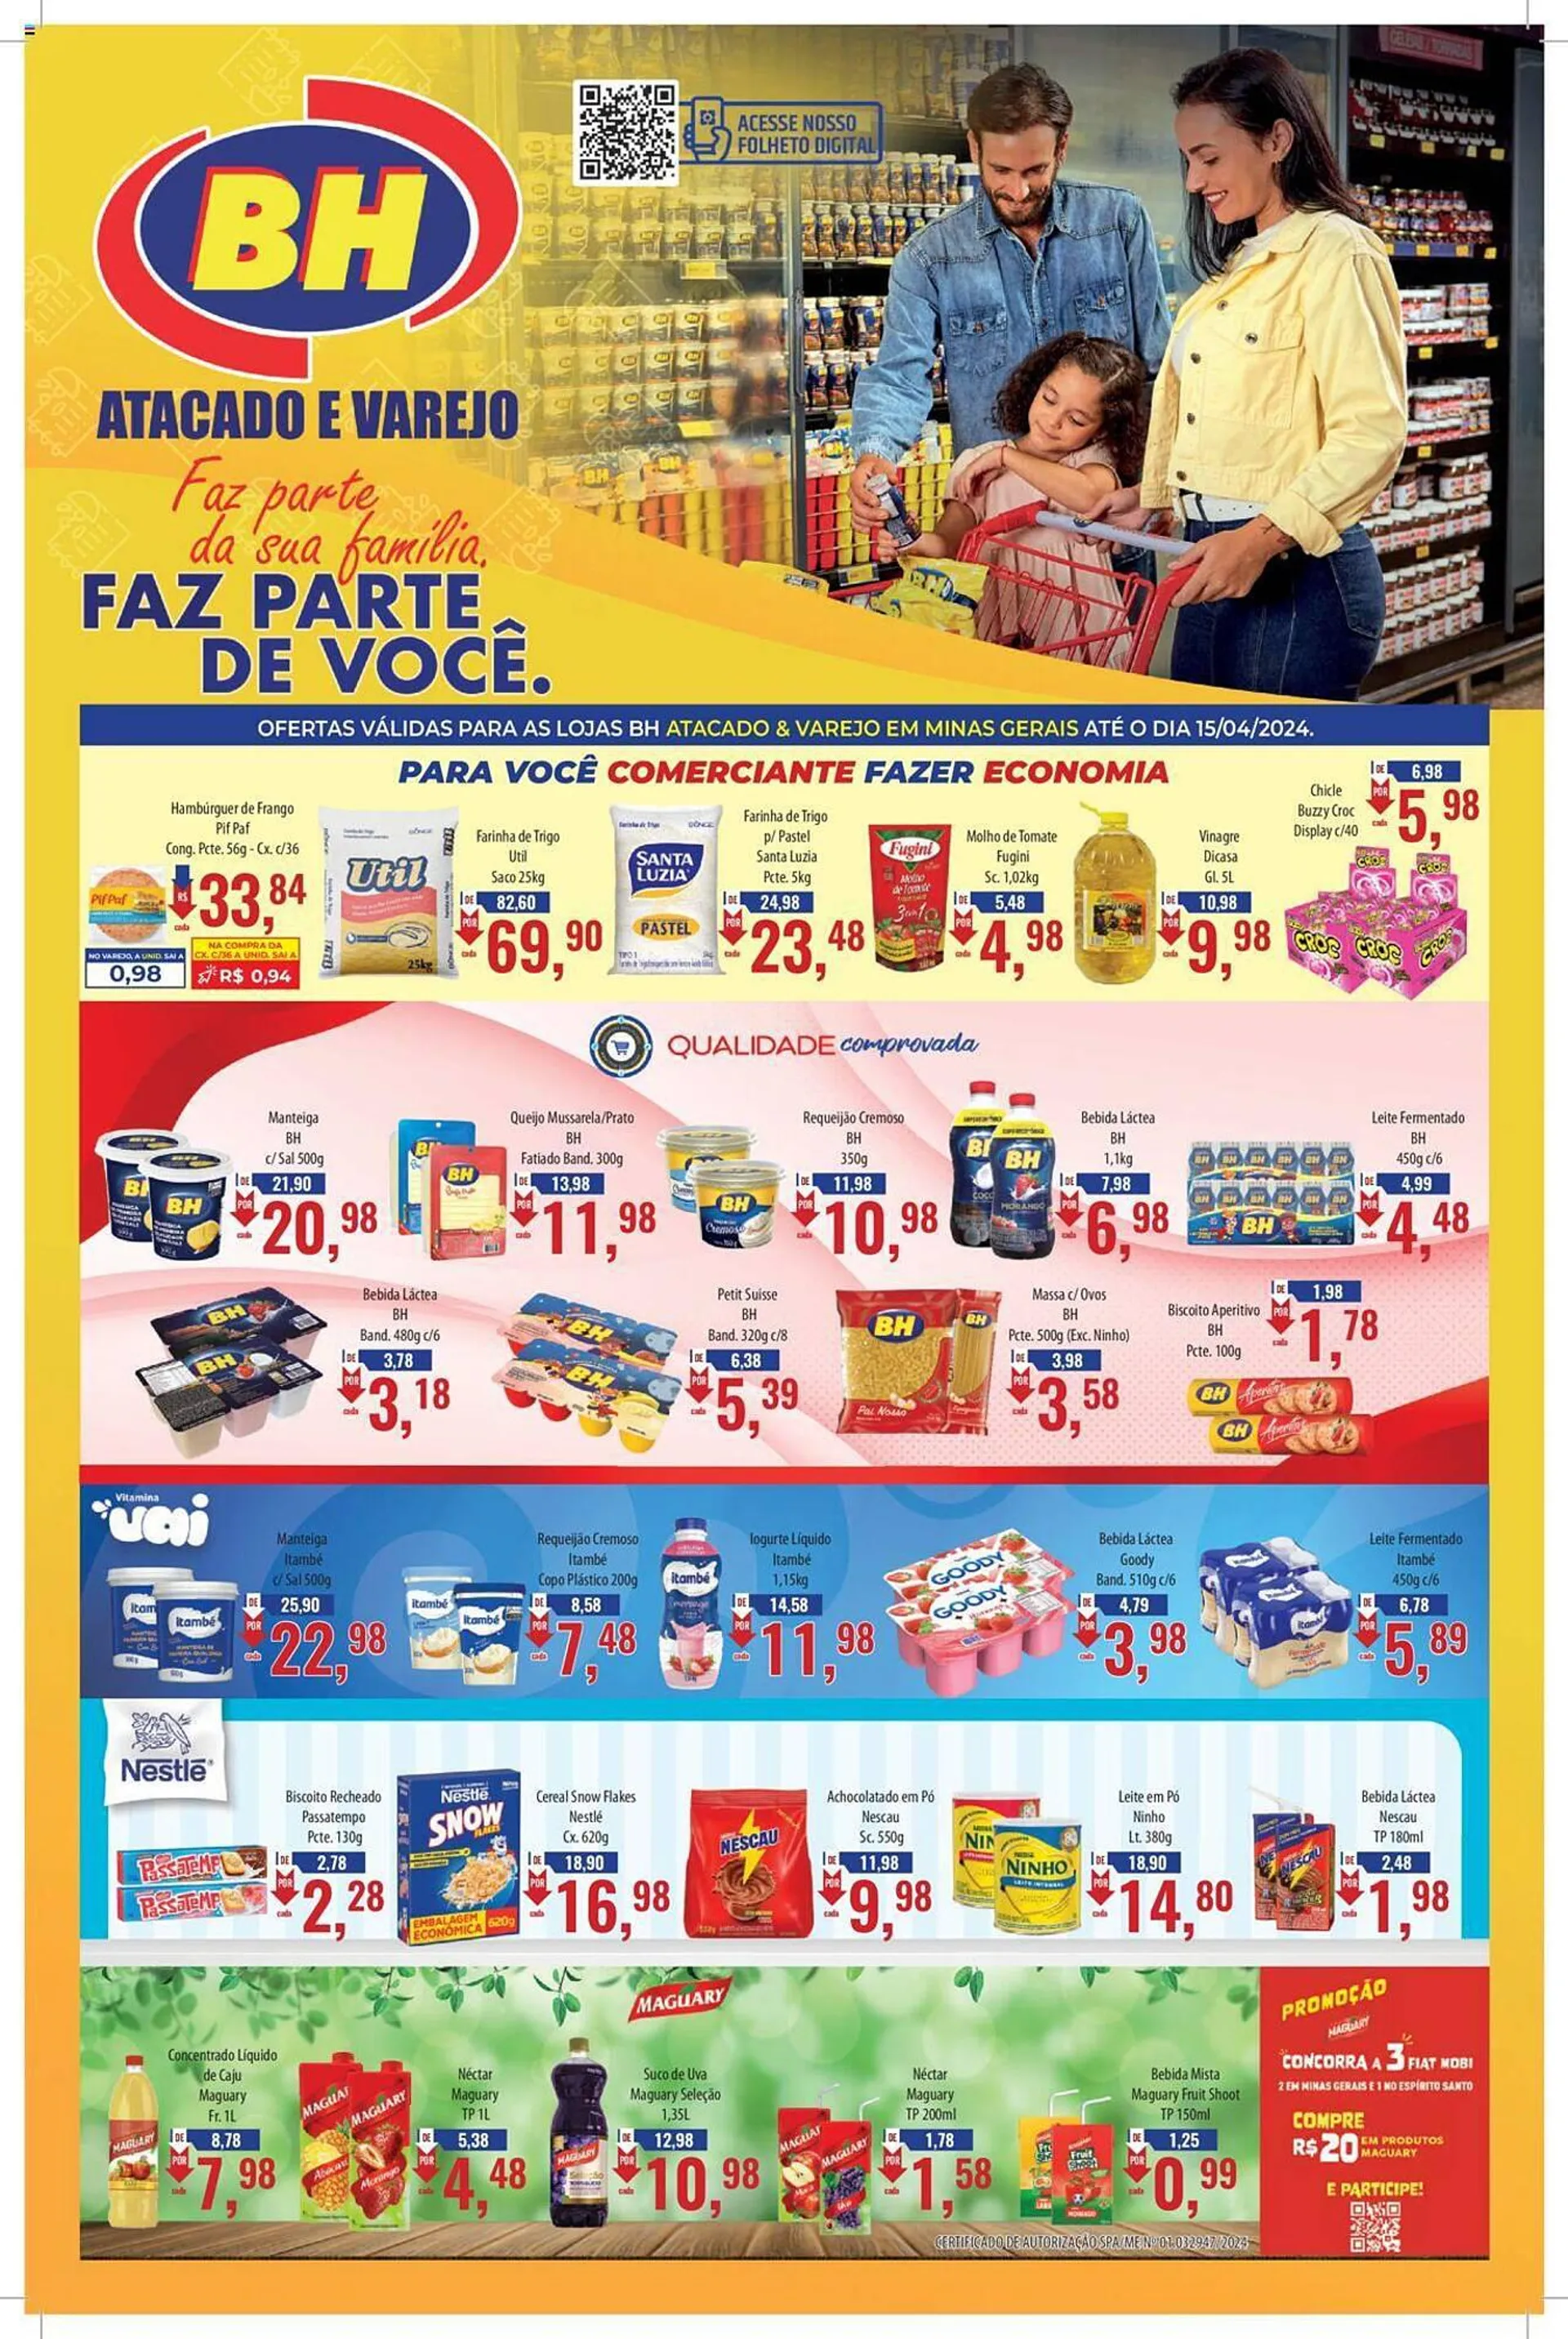 Encarte de Catálogo Supermercados BH 2 de abril até 15 de abril 2024 - Pagina 1